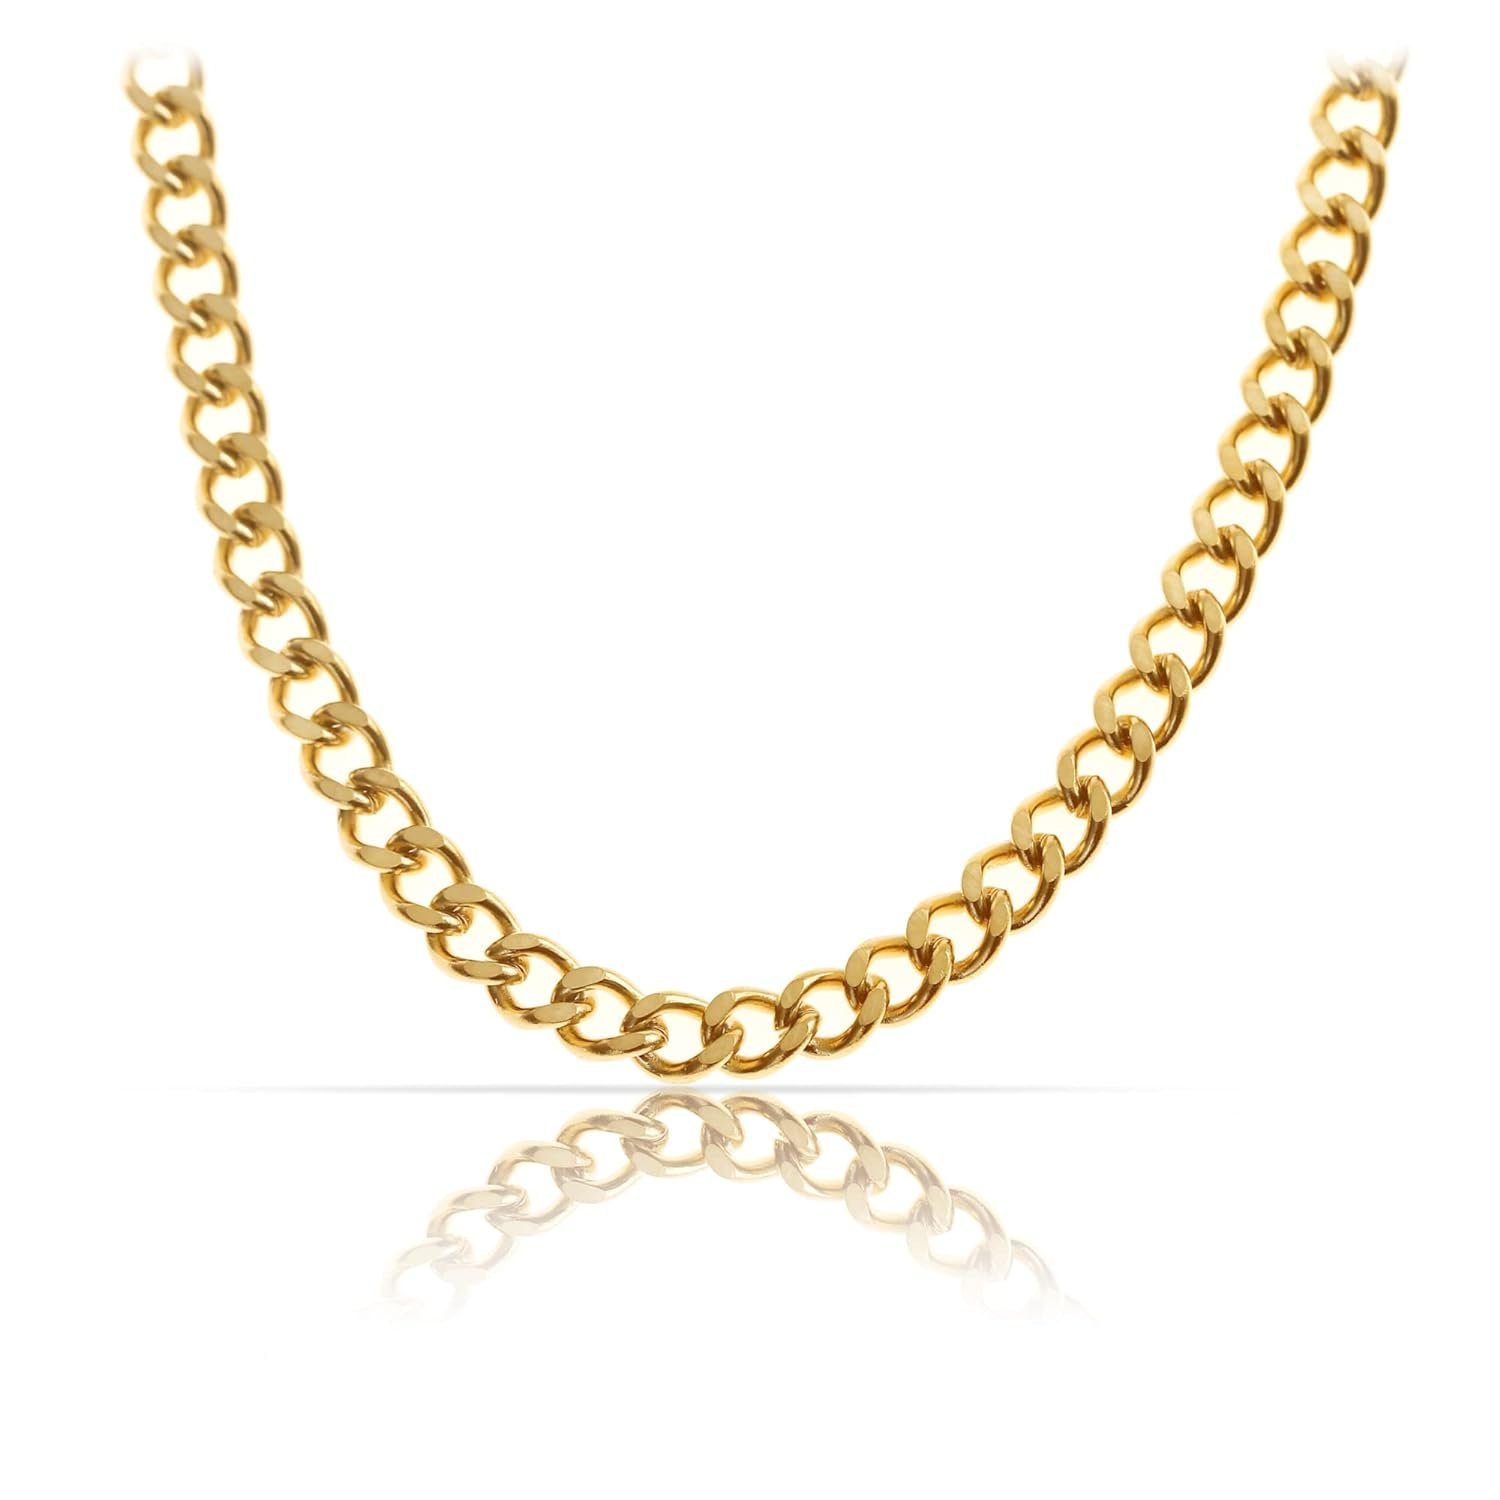 Made by Nami Panzerkette Hochwertige Link Halskette & Robuste Damen Edelstahl Cuban Halskette Chain Gliederkette Herren Gold Königskette, aus